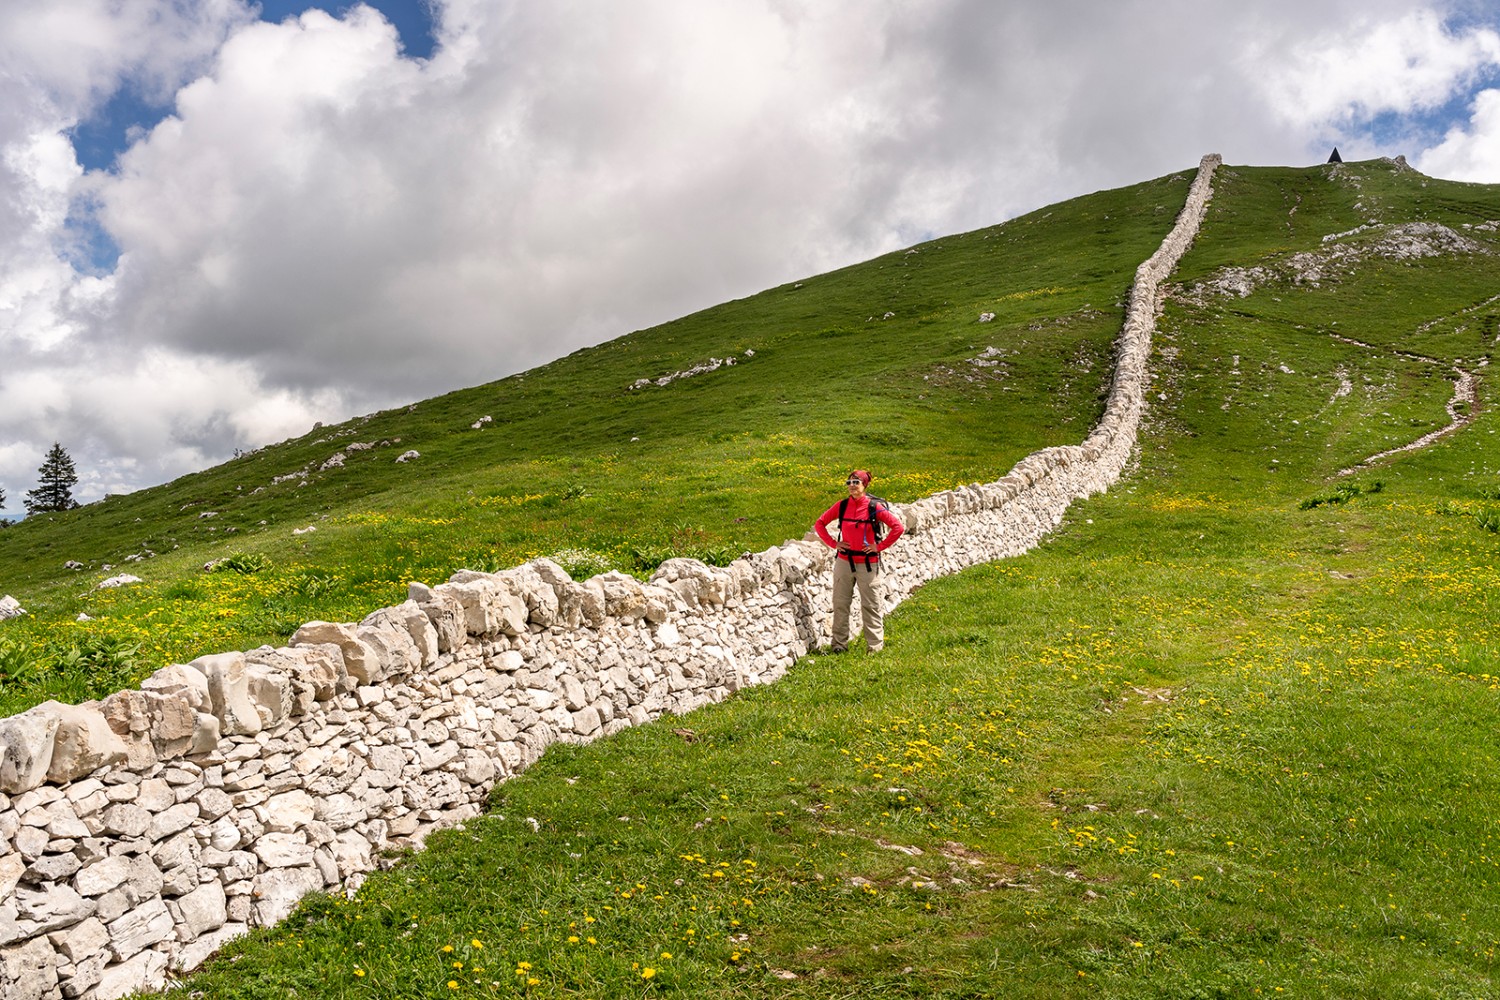 Les murs en pierres sèches marquent fortement le paysage jurassien. Ici sur le Mont Tendre. Photo: Severin Nowacki